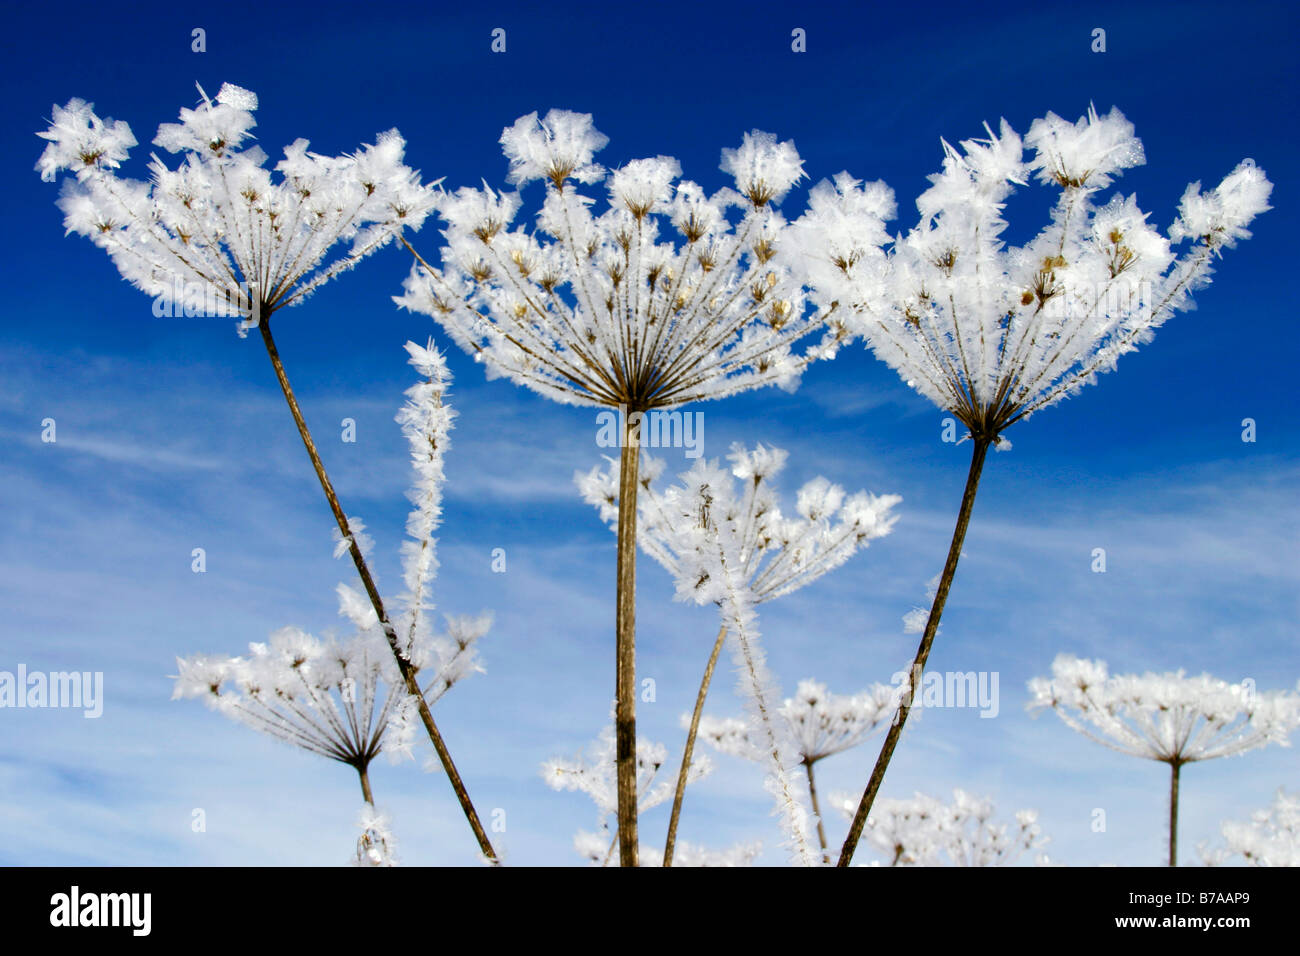 Frost on umbels (Apiaceae), Misurina, Dolomites, Italy, Europe Stock Photo